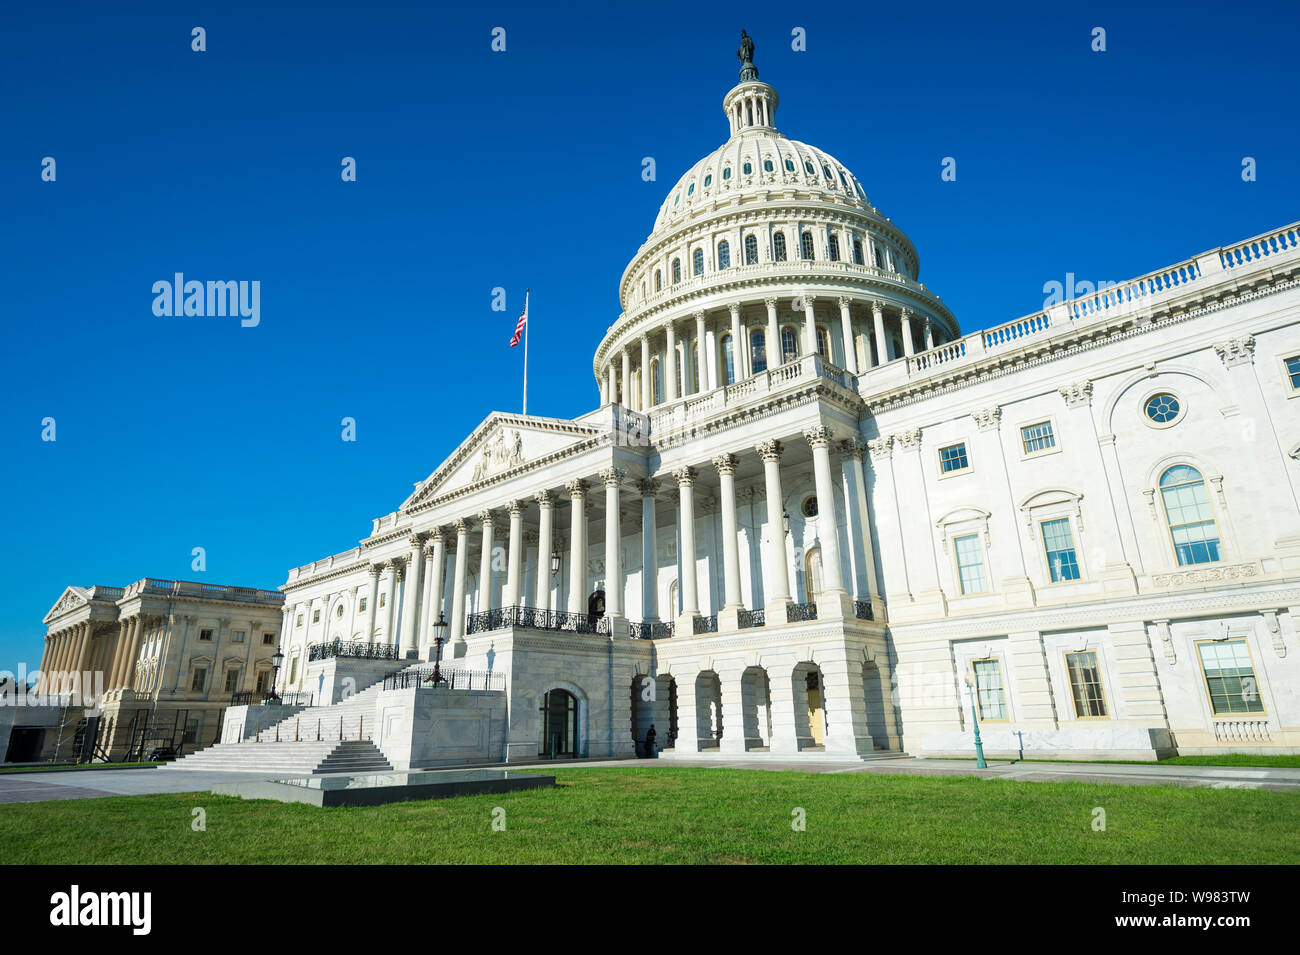 United States Capitol Building Washington DC USA vista panoramica con estate erba verde che circonda la scalinata d'ingresso sotto il cielo blu chiaro Foto Stock